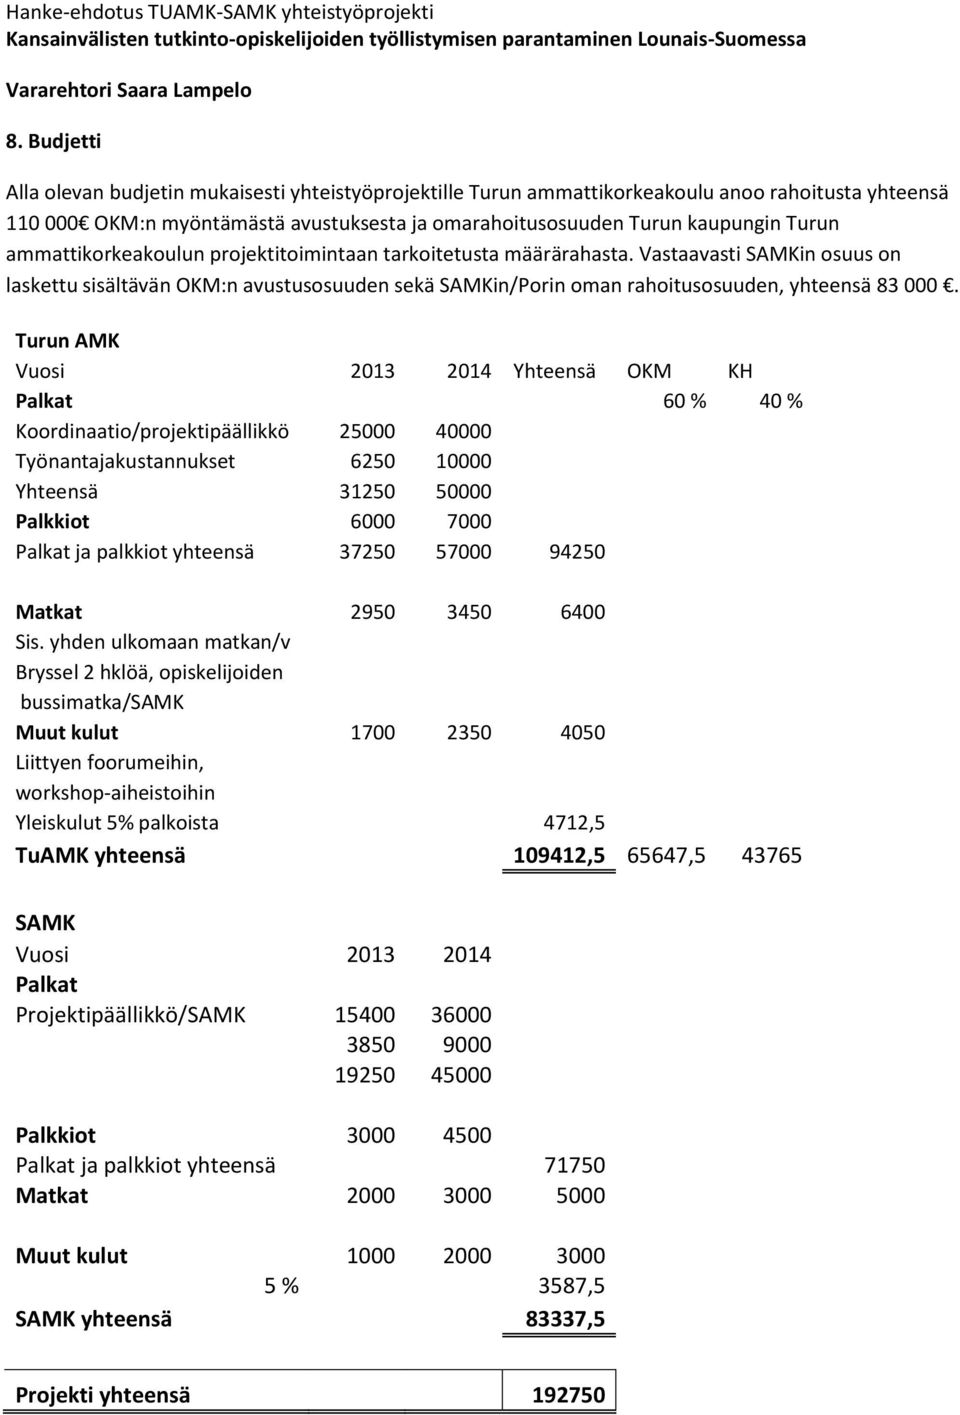 Turun AMK Vuosi 2013 2014 Yhteensä OKM KH Palkat 60 % 40 % Koordinaatio/projektipäällikkö 25000 40000 Työnantajakustannukset 6250 10000 Yhteensä 31250 50000 Palkkiot 6000 7000 Palkat ja palkkiot